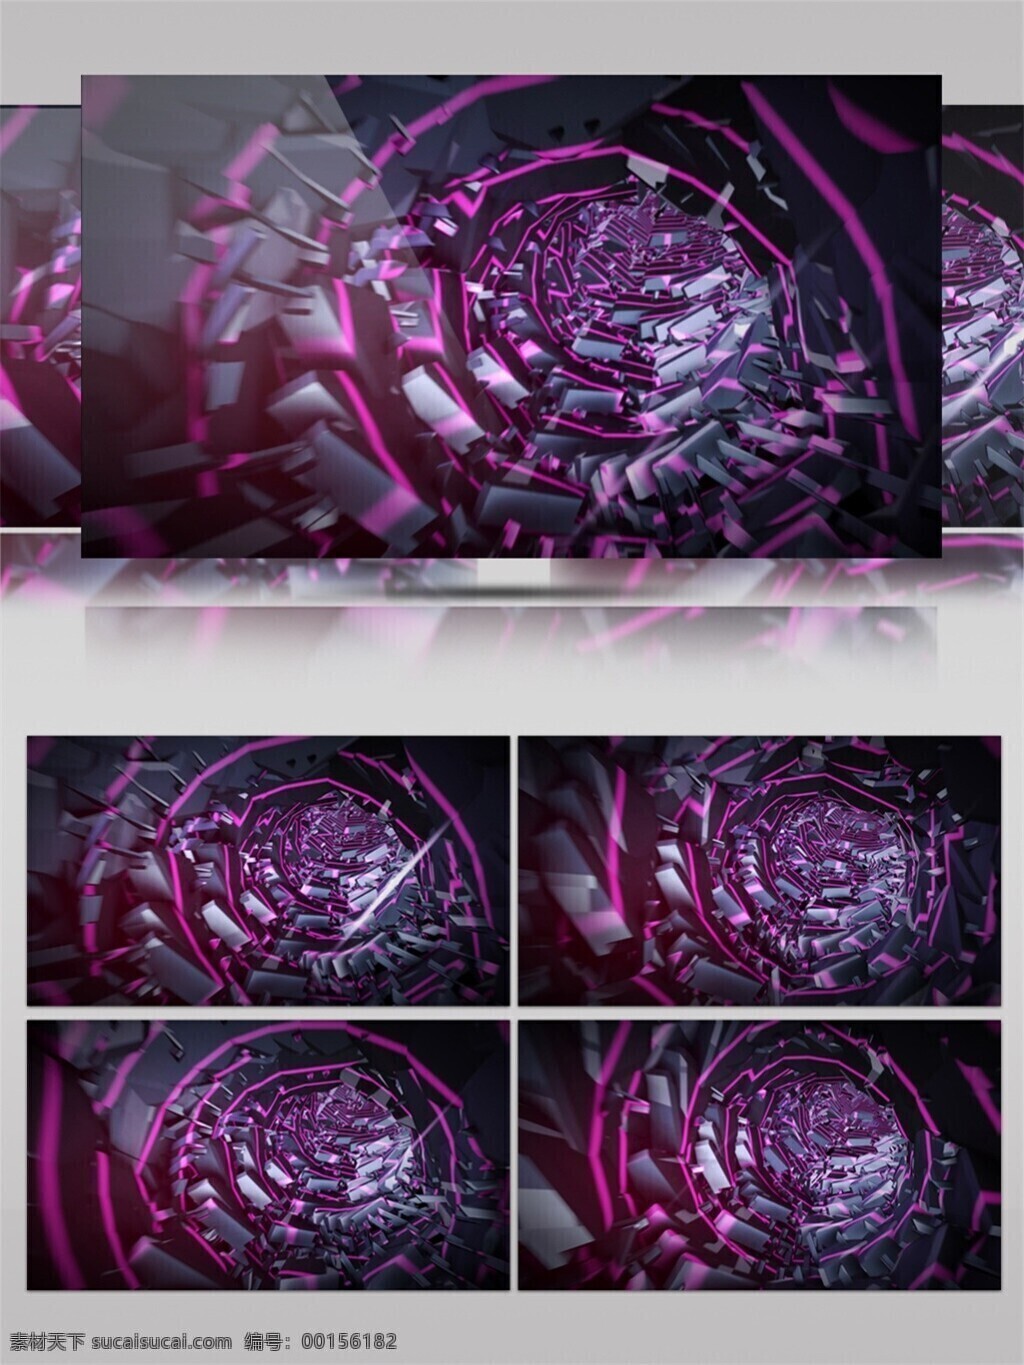 紫色 星际 旋涡 视频 光束 激光 高清素材 唯美素材 光景素材